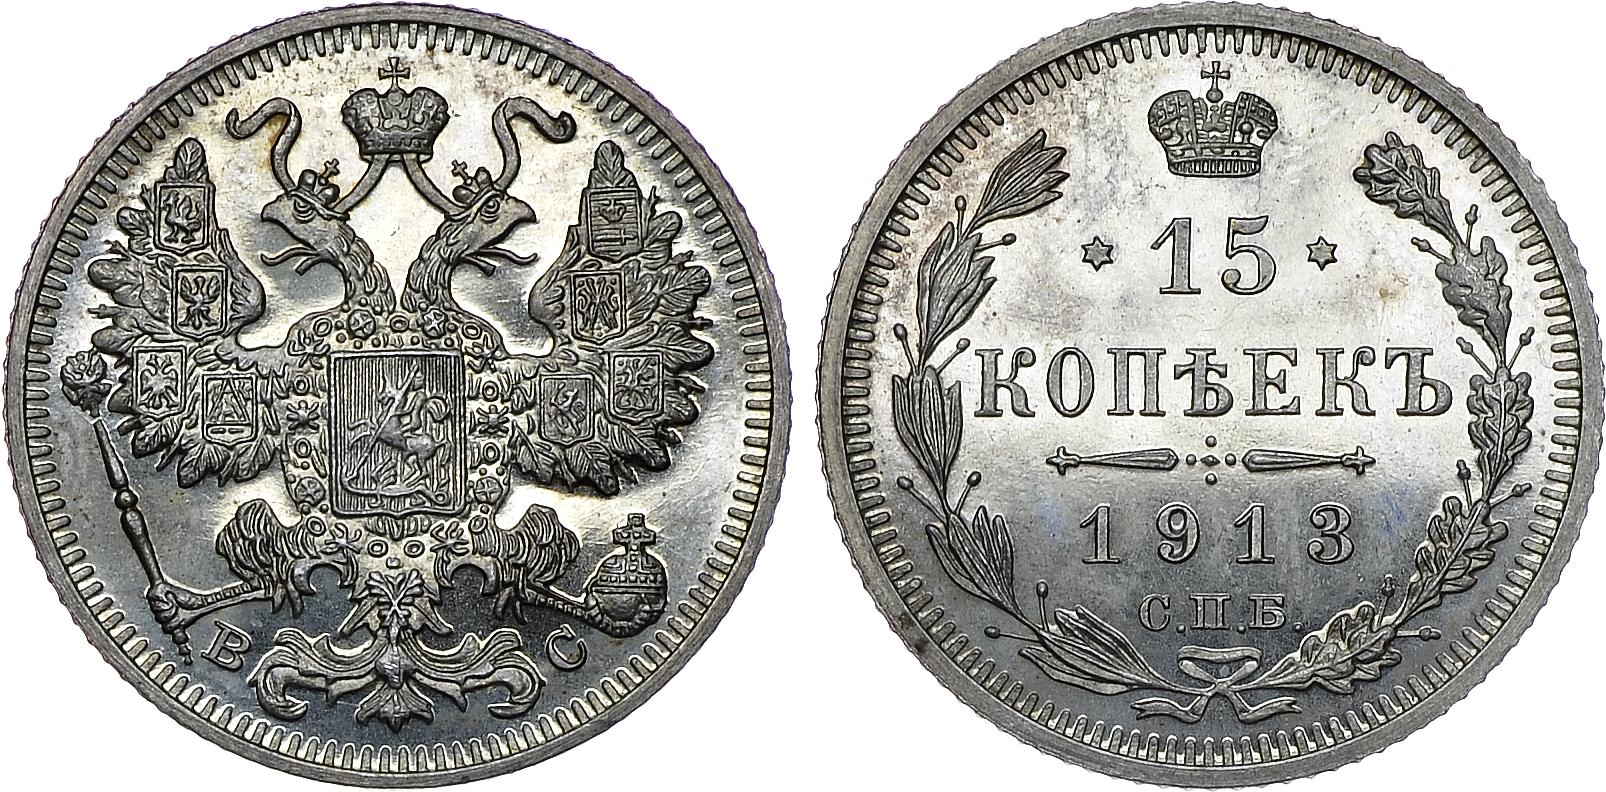 15 серебряных копеек 1913 года